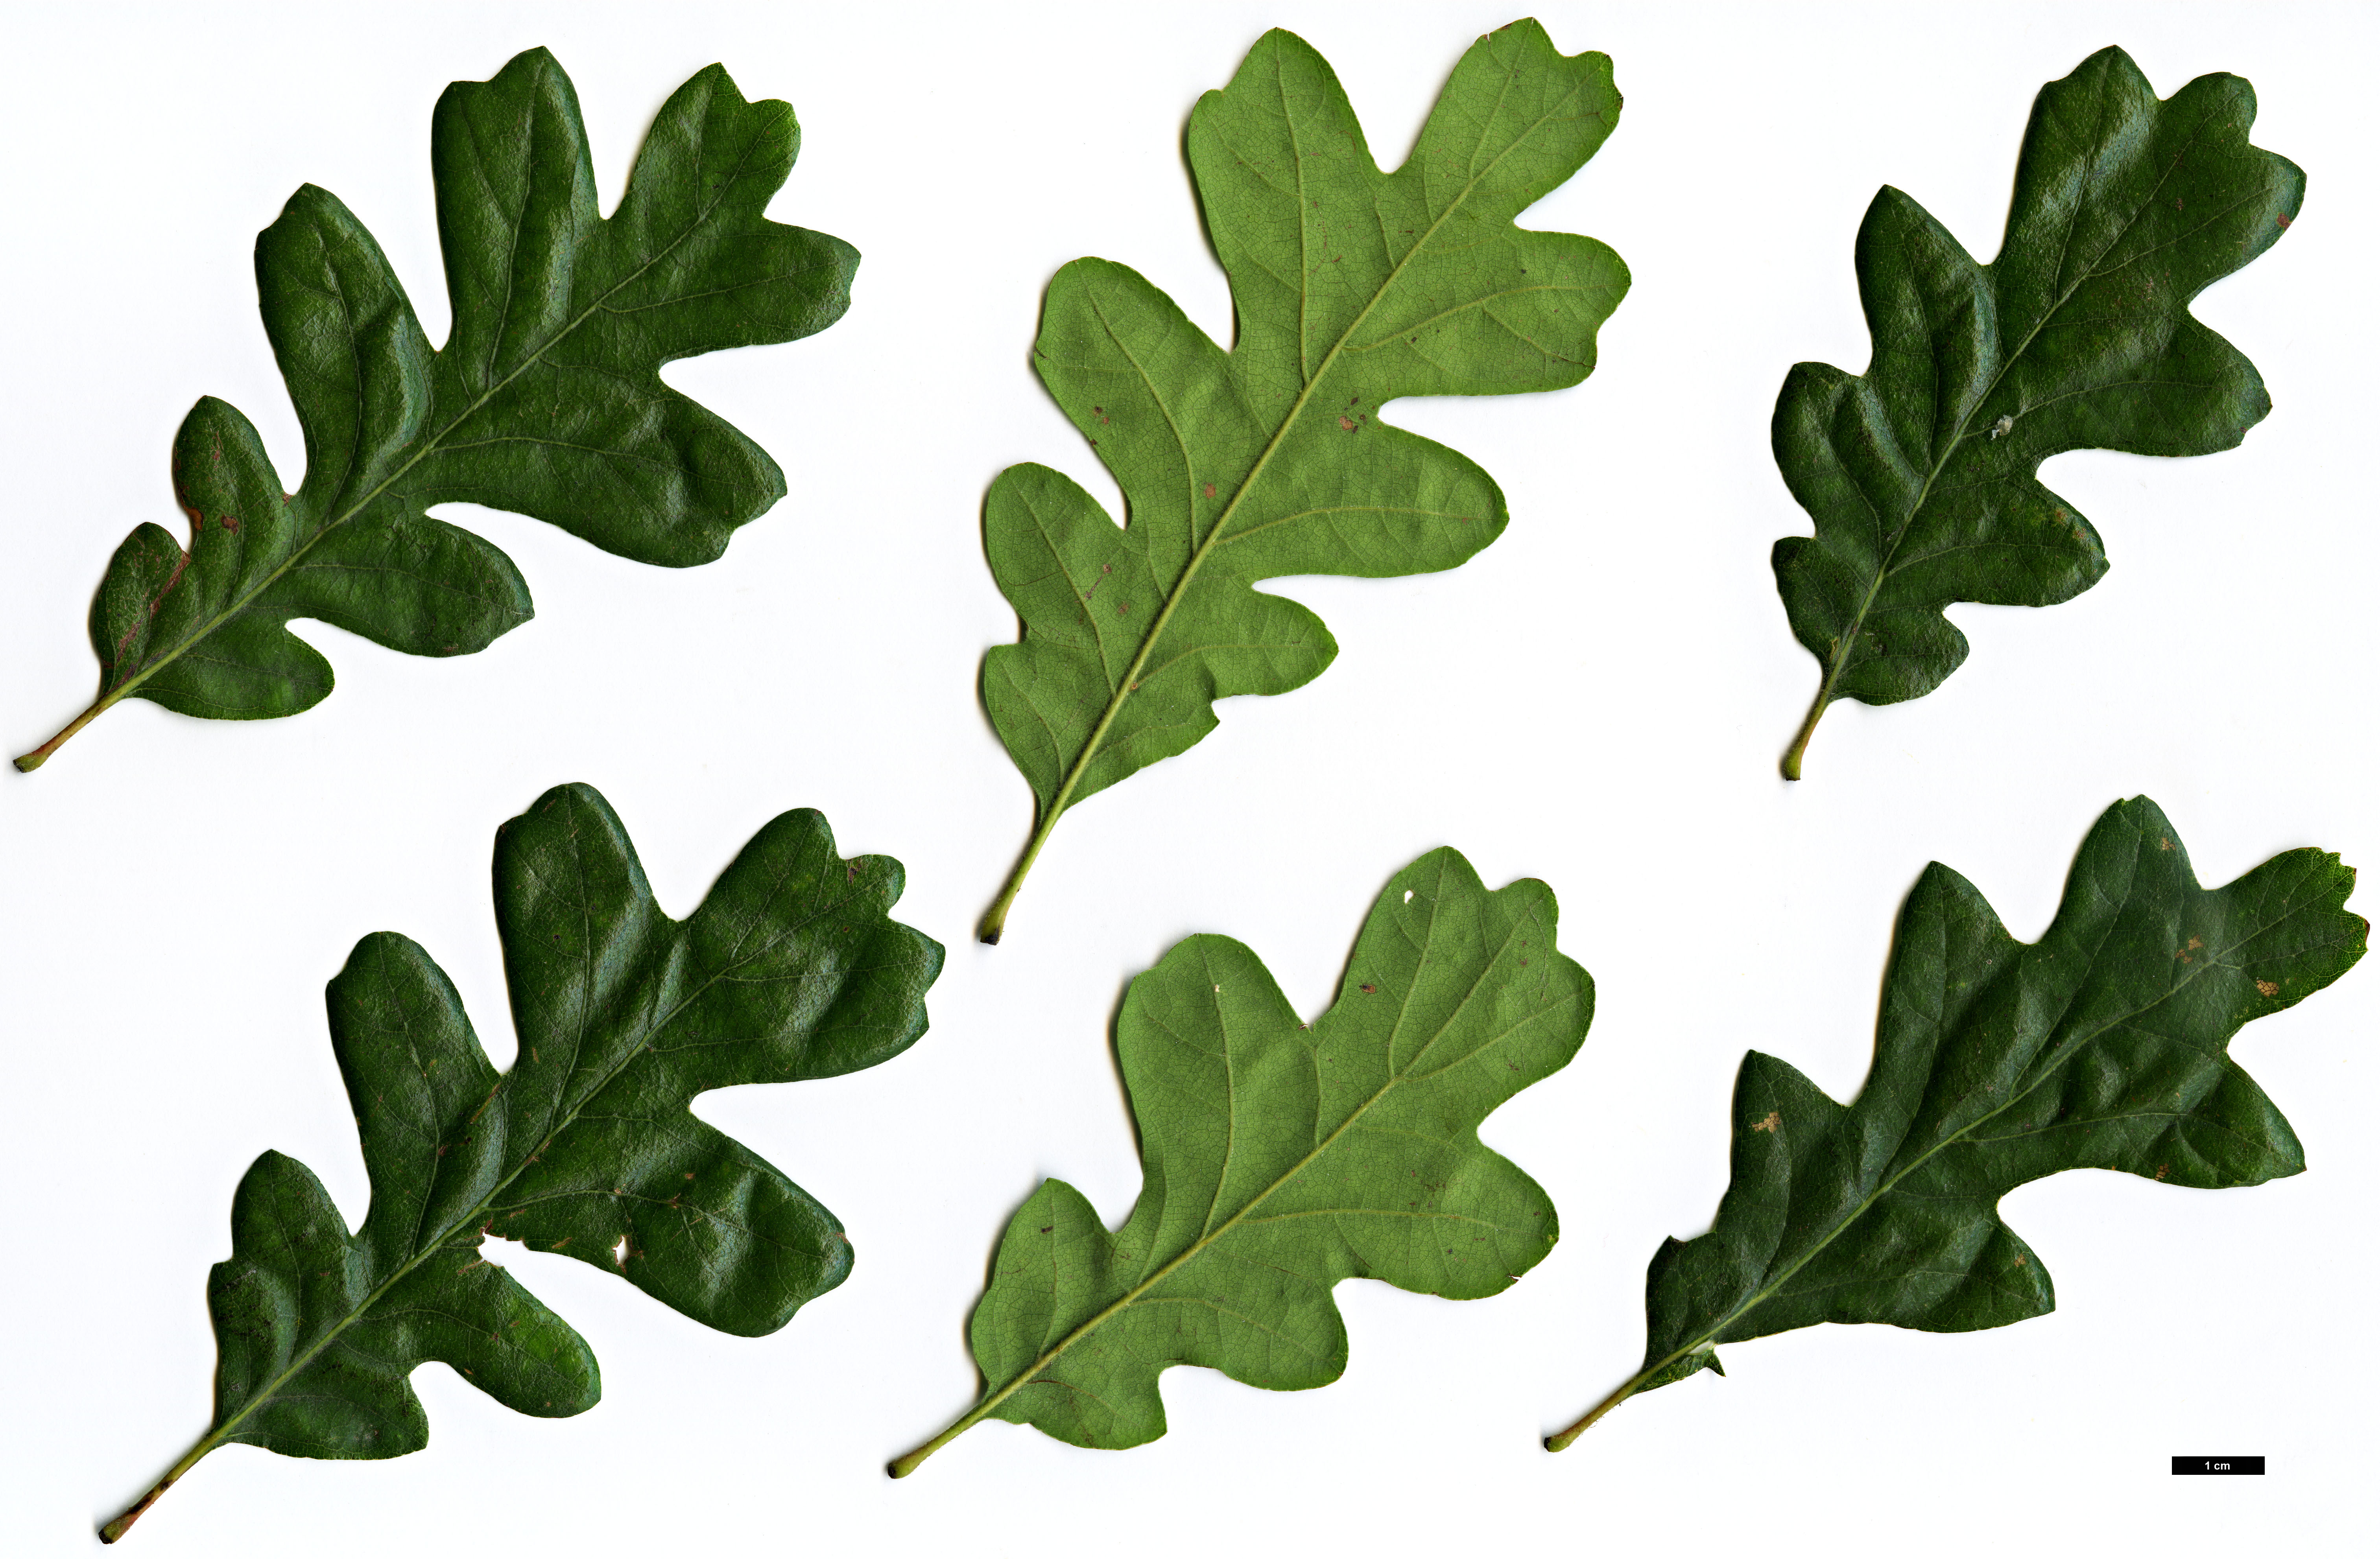 High resolution image: Family: Fagaceae - Genus: Quercus - Taxon: garryana - SpeciesSub: subsp. semota